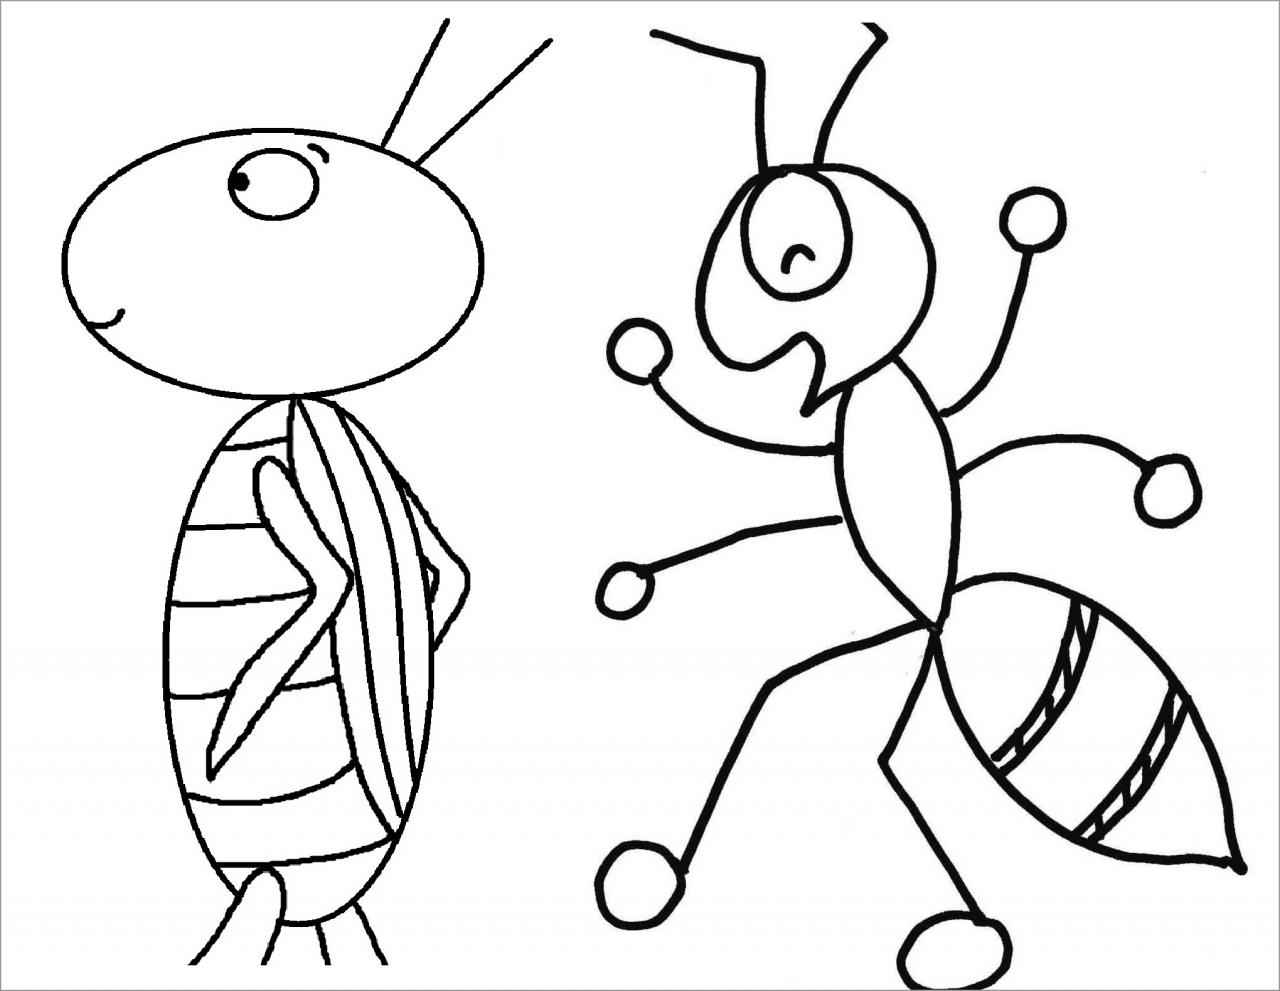 Tuyển chọn tranh tô màu con côn trùng giúp bé khéo tay nhanh mắt